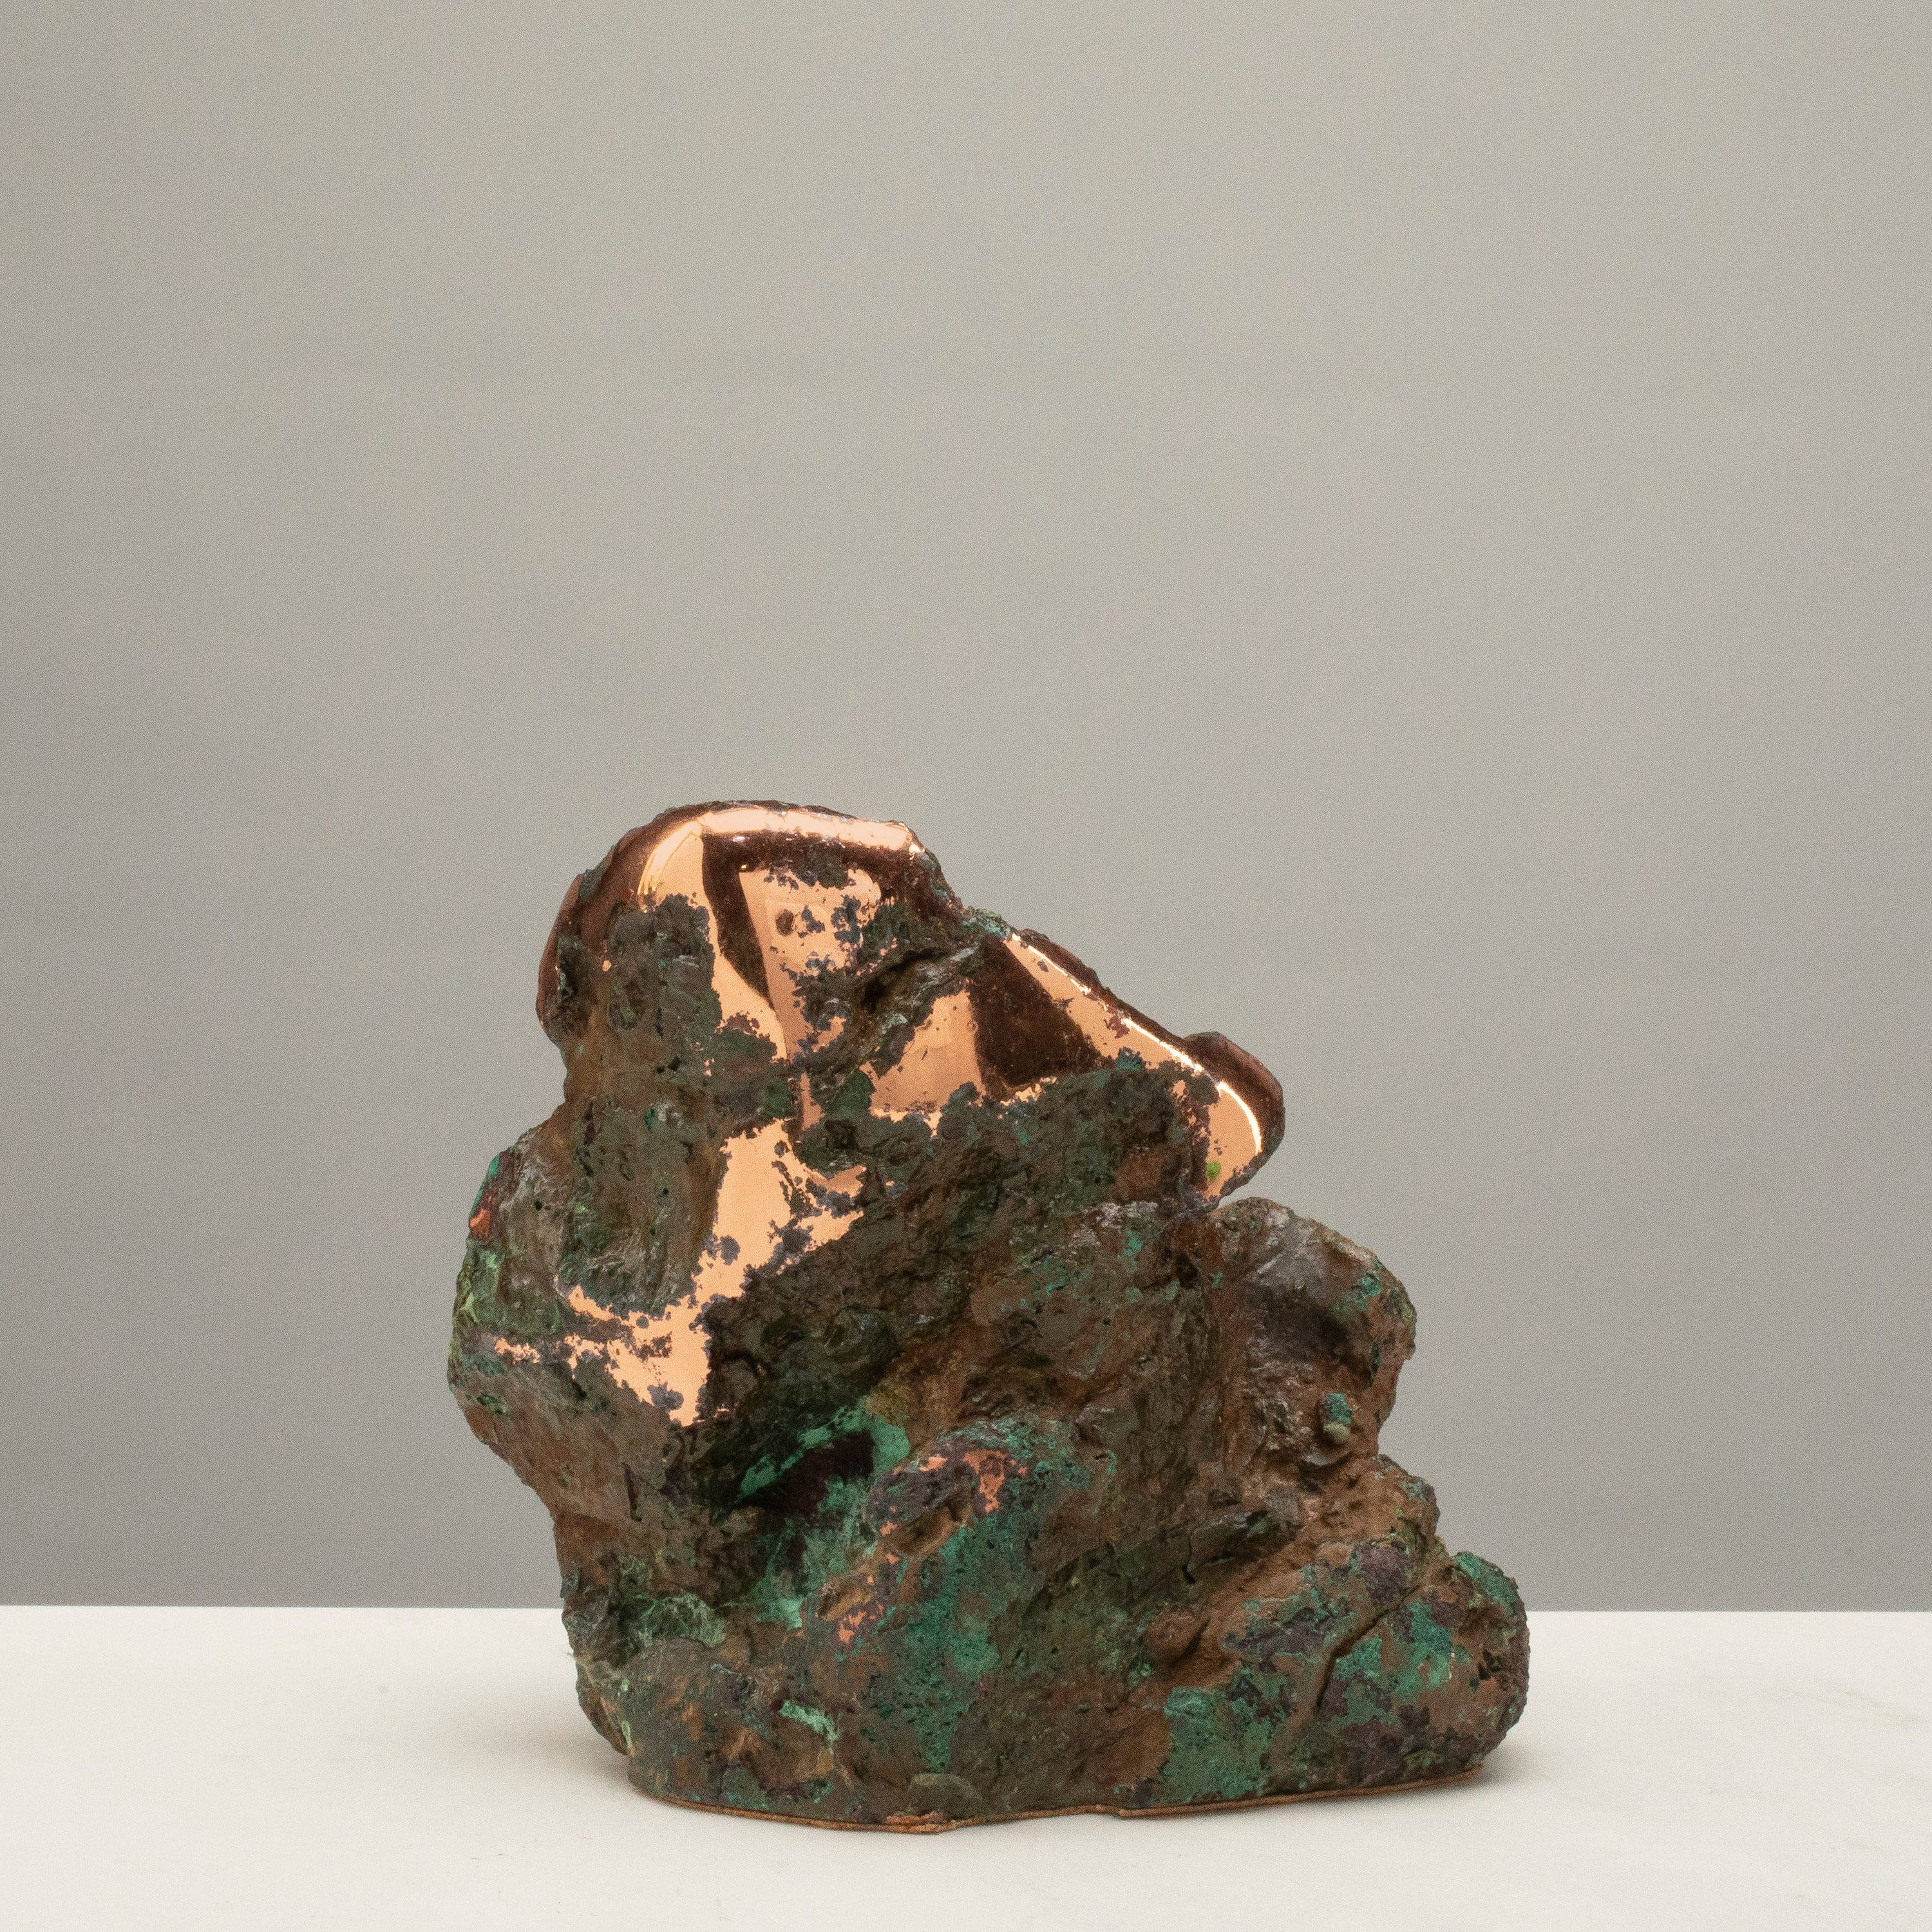 Kalifano Copper Copper Butchite from Michigan - 6" / 5.9lbs CPR1500.001